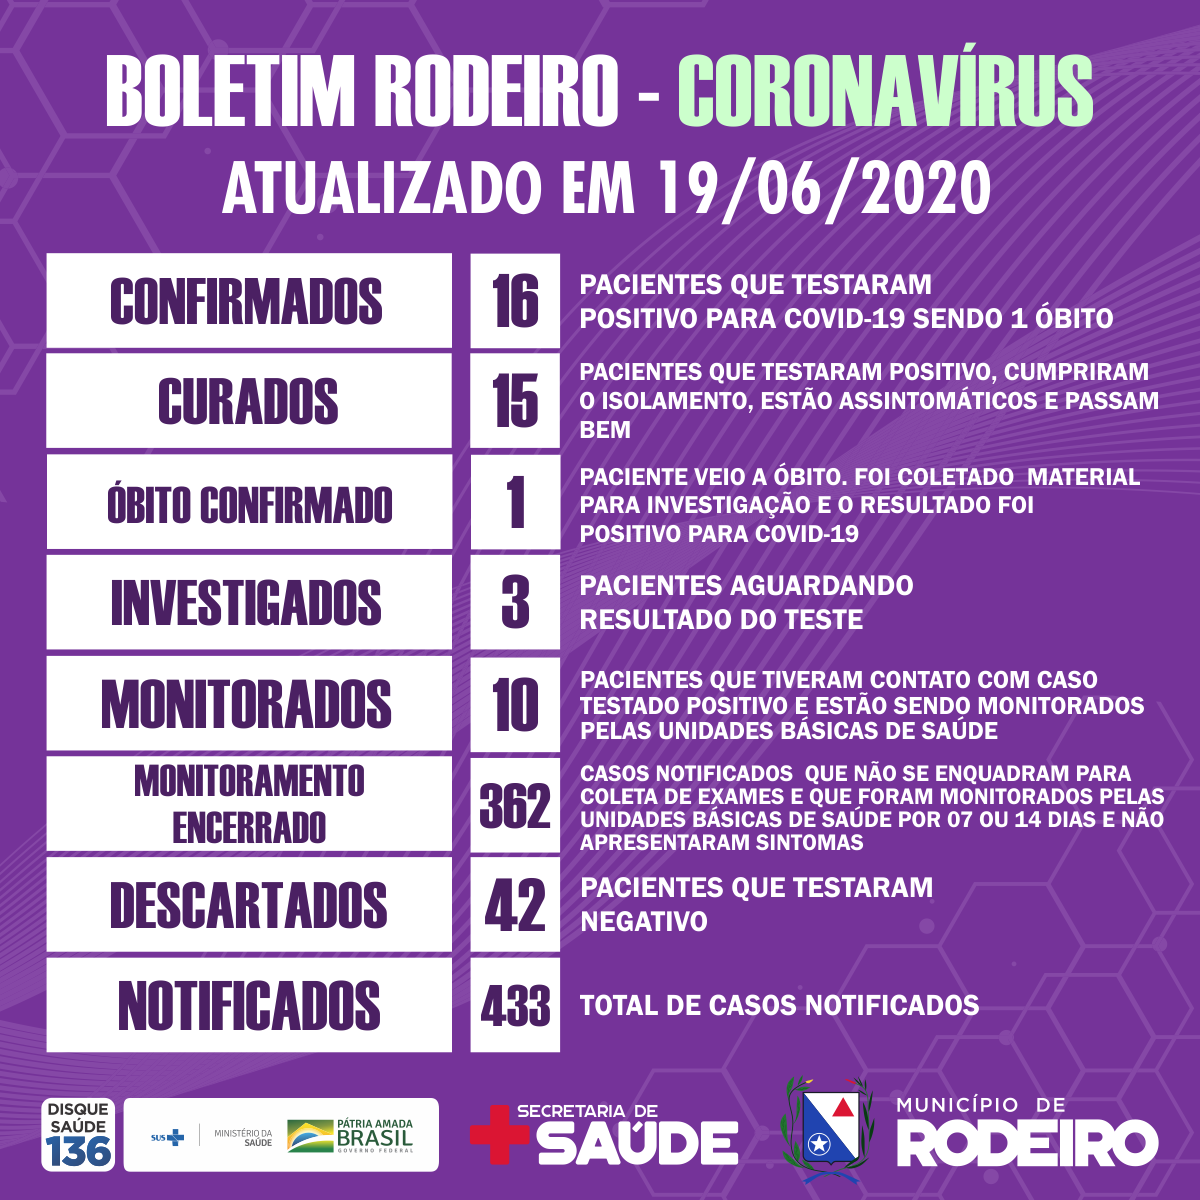 Boletim epidemiológico do Município de Rodeiro coronavírus, atualizado em 19/06/2020